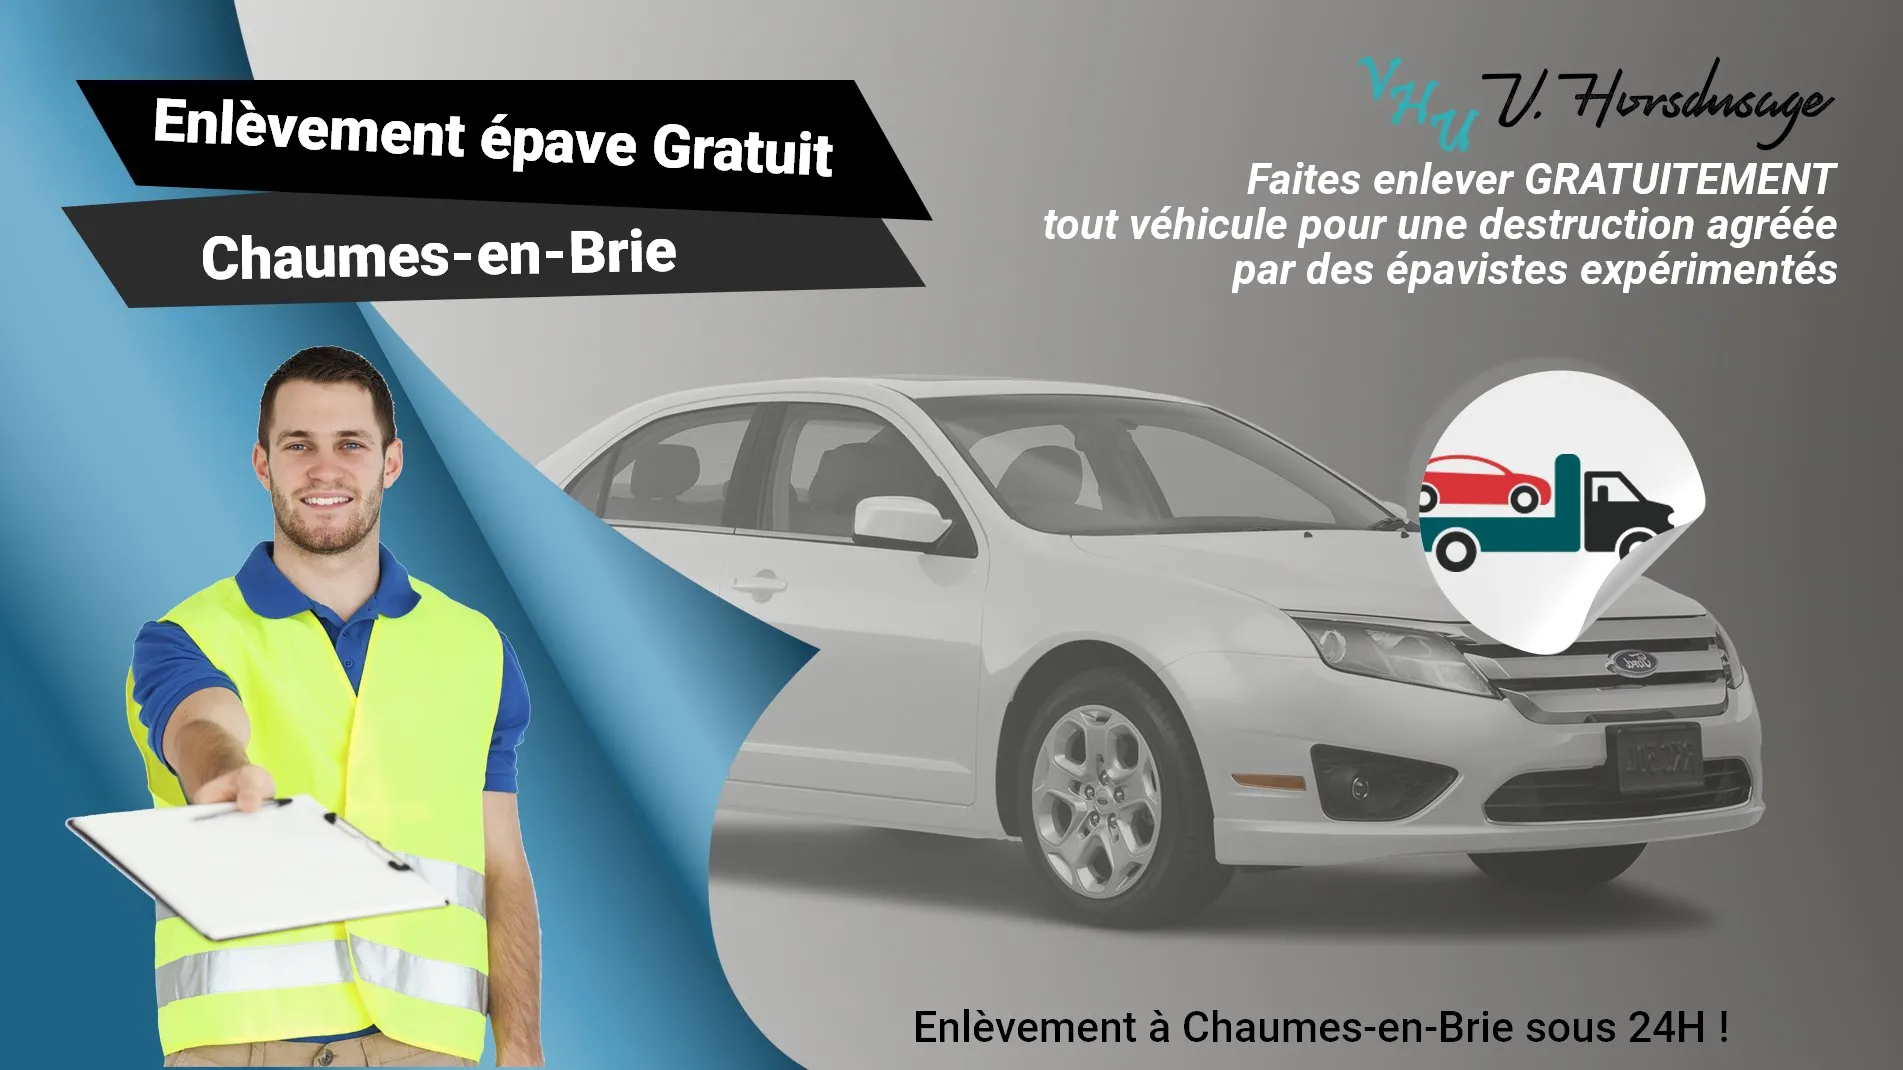 Pour un enlèvement gratuit à Chaumes-en-Brie, contactez nos épavistes agréé VHU